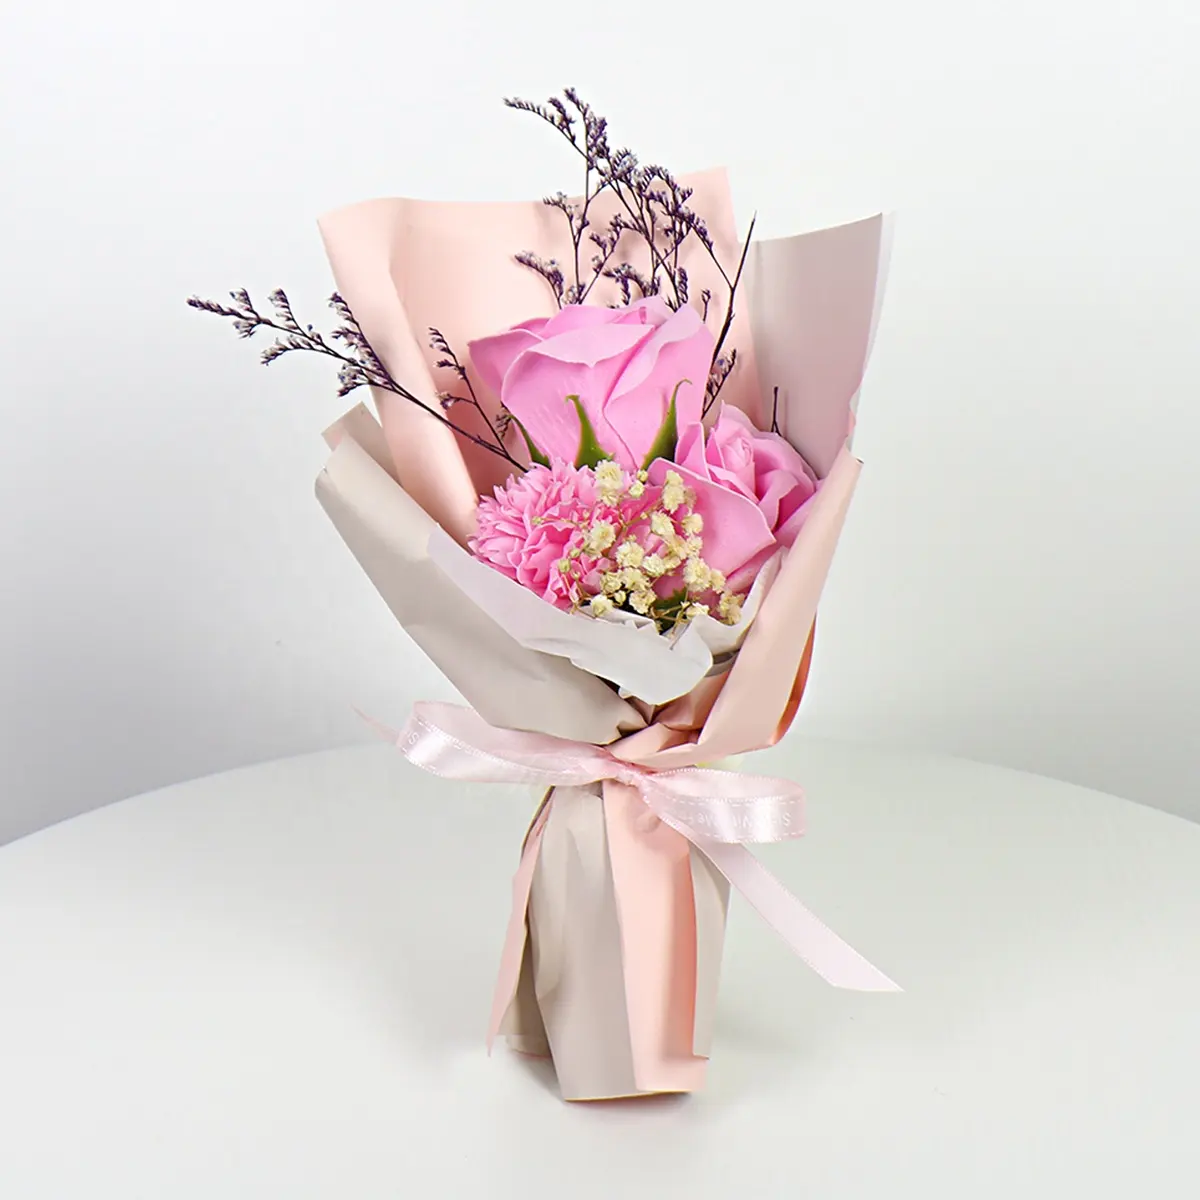 All'ingrosso della fabbrica di garofani artificiali rosa piccola scatola regalo per la festa della mamma, regali di festa fiori artificiali